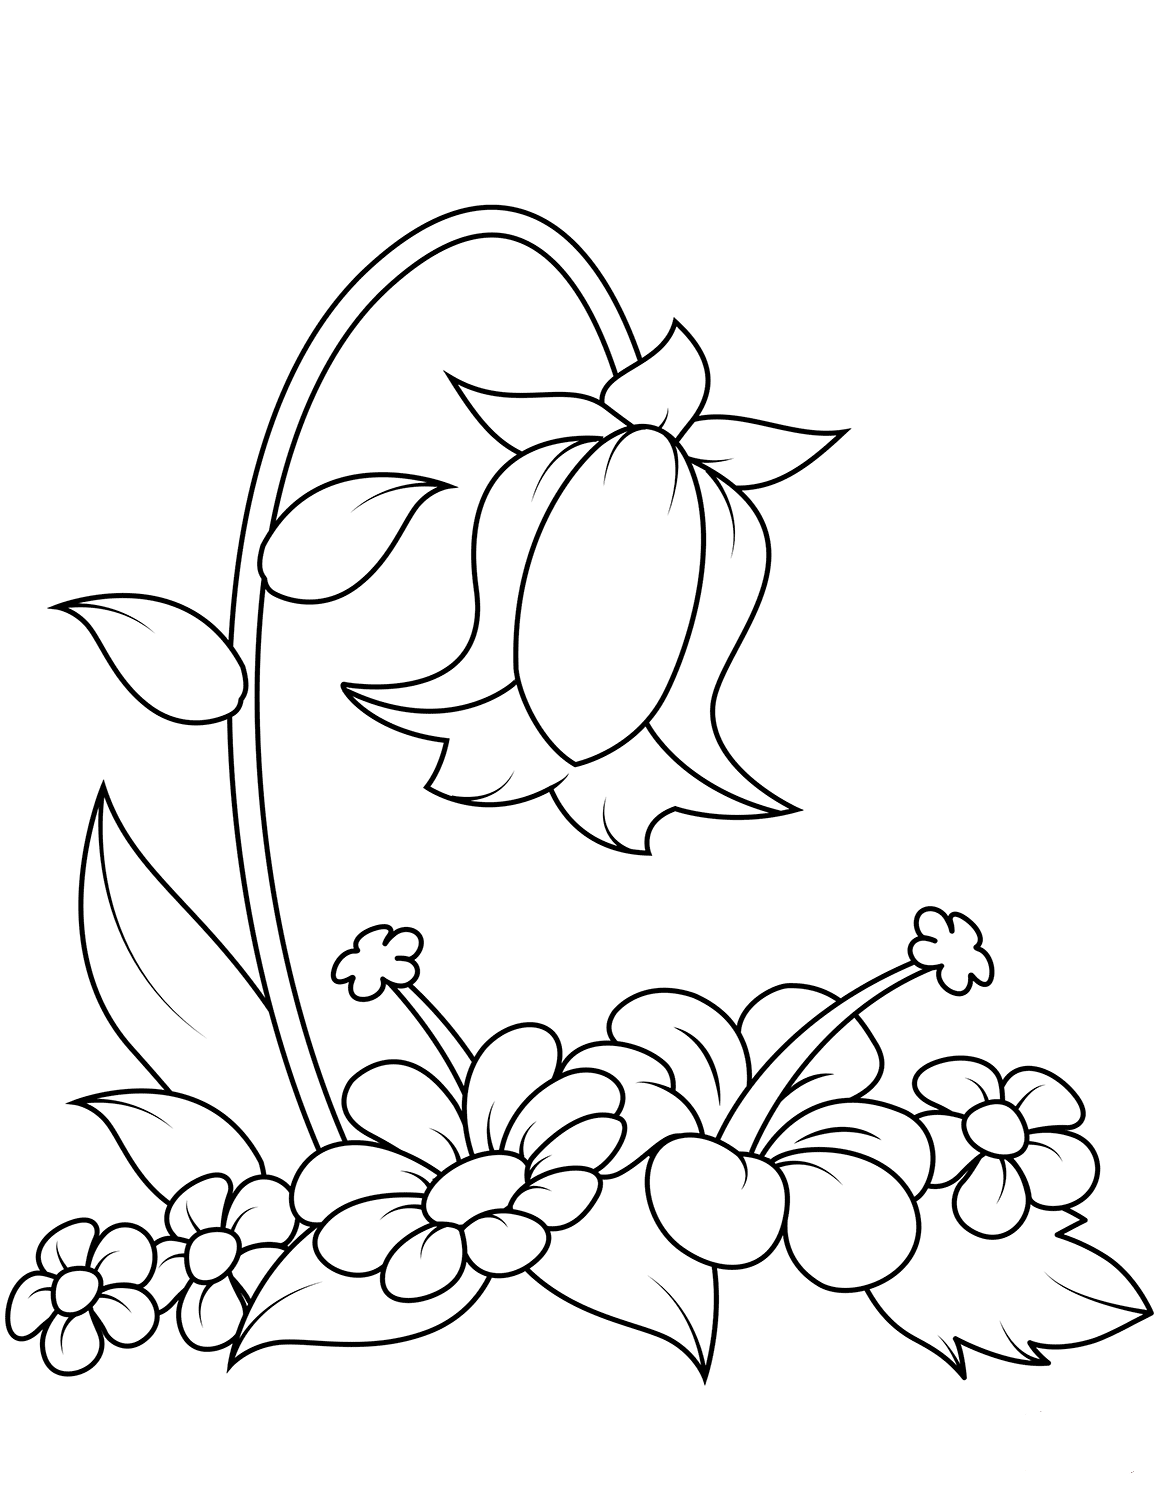 Bell Flower from Bellflower